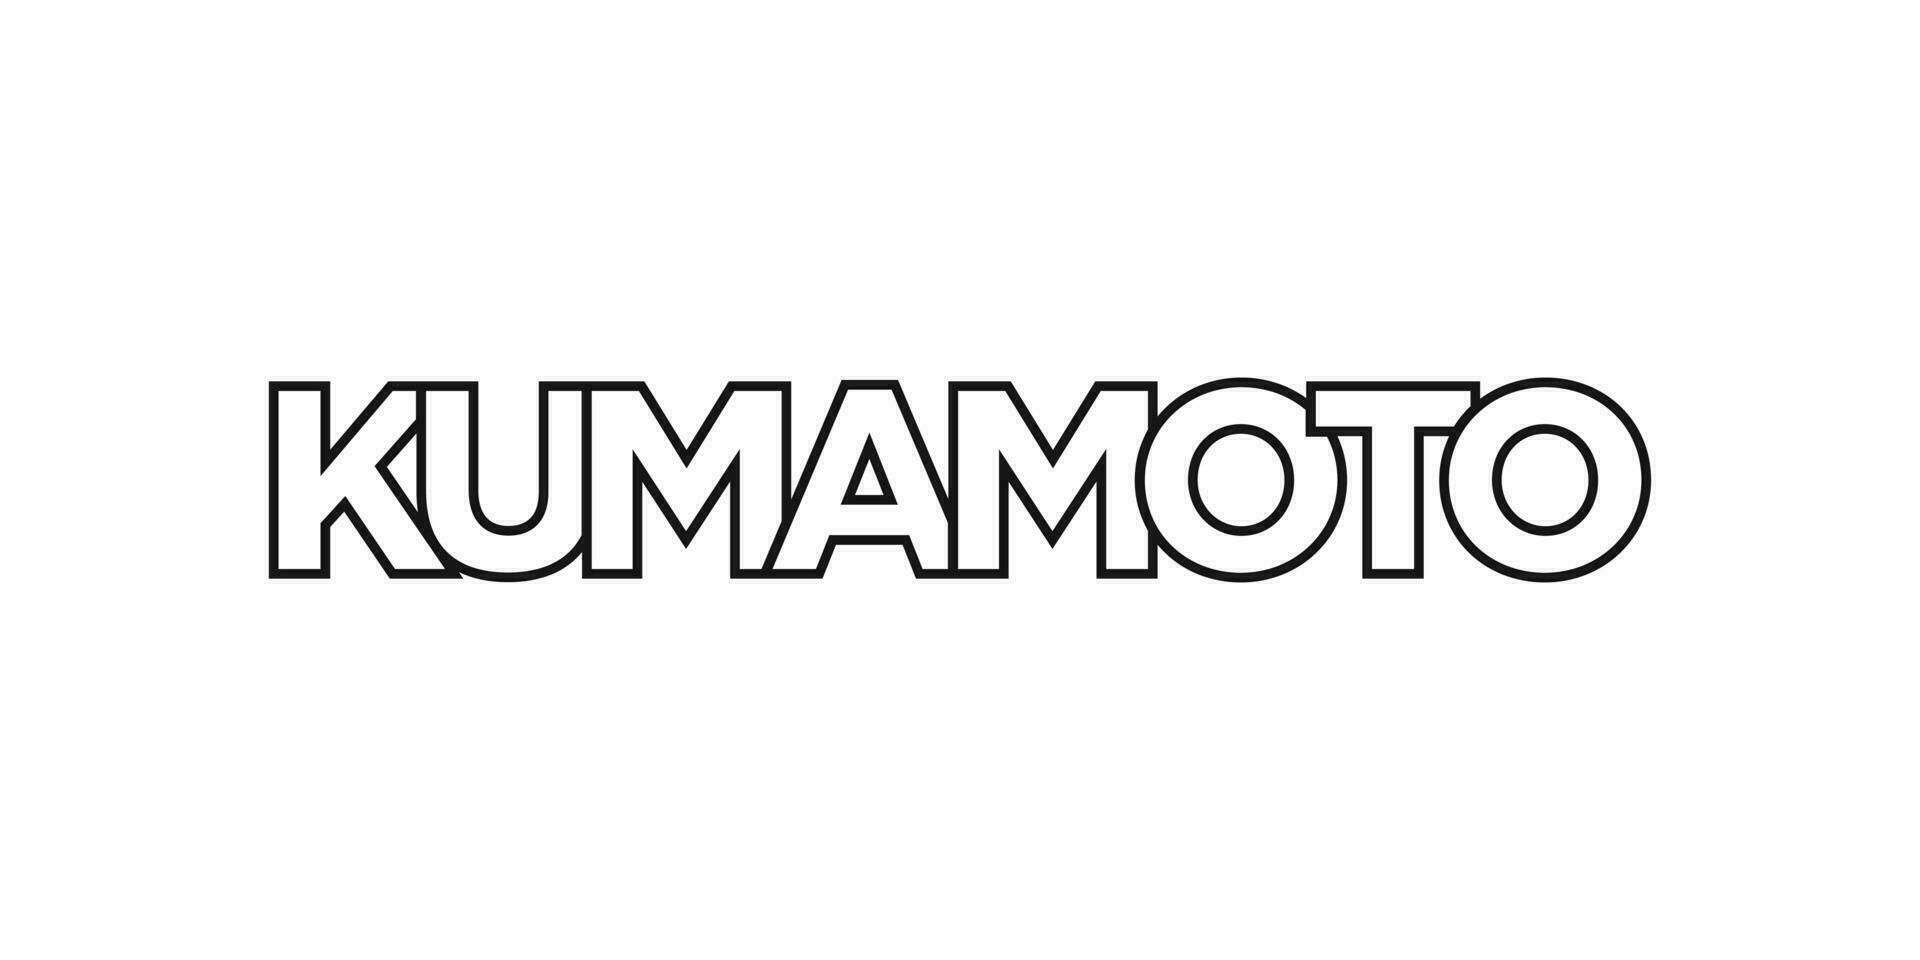 Kumamoto in de Japan embleem. de ontwerp Kenmerken een meetkundig stijl, vector illustratie met stoutmoedig typografie in een modern lettertype. de grafisch leuze belettering.